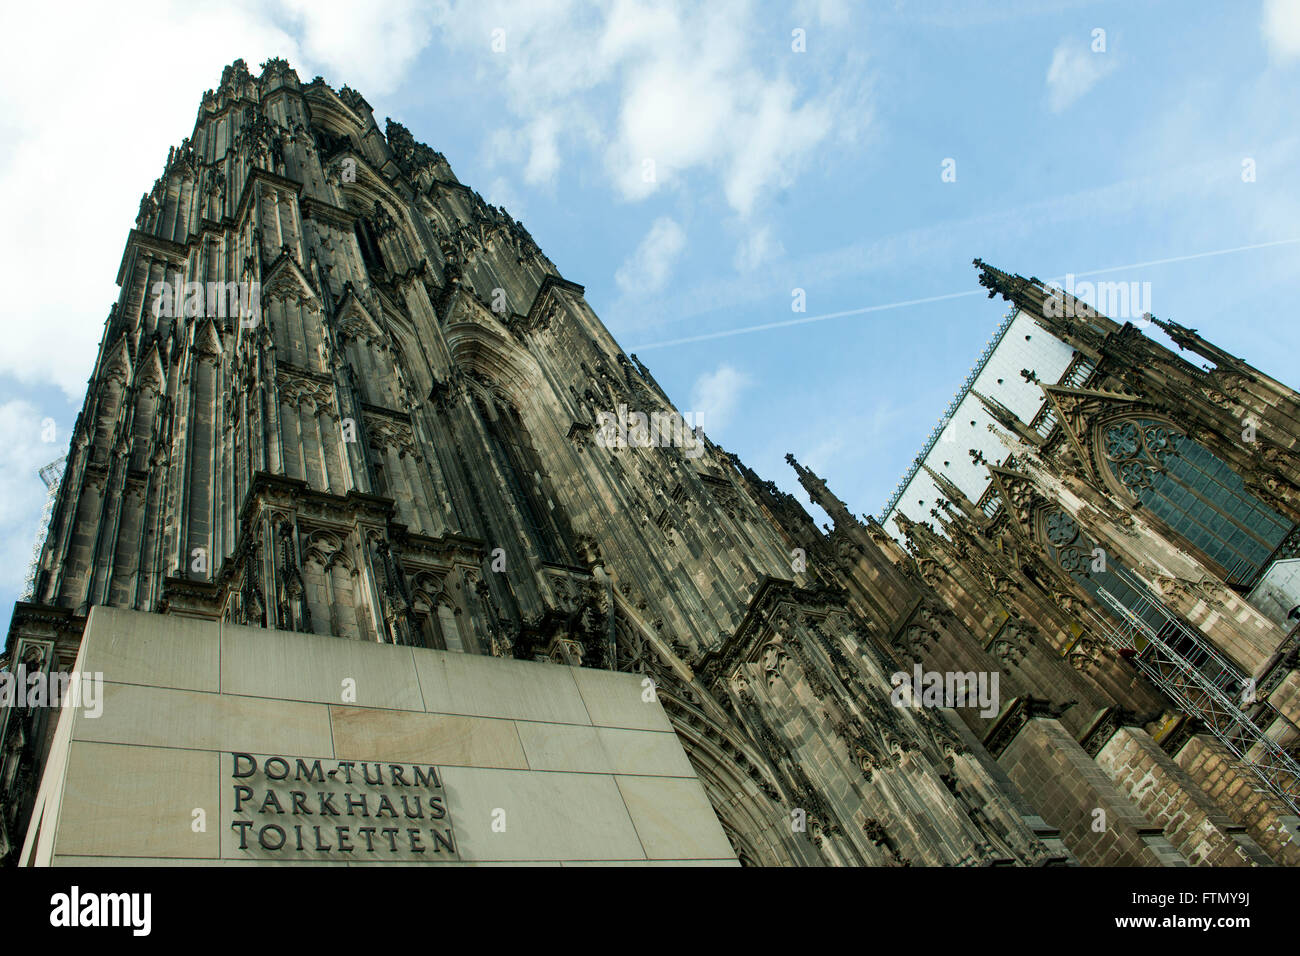 Köln, Altstadt-Nord, Der Kölner Dom, offizieller Name Hohe Domkirche St. Petrus. Seit 1996 zählt der Kölner Dom zum UNESCO-Weltk Stock Photo